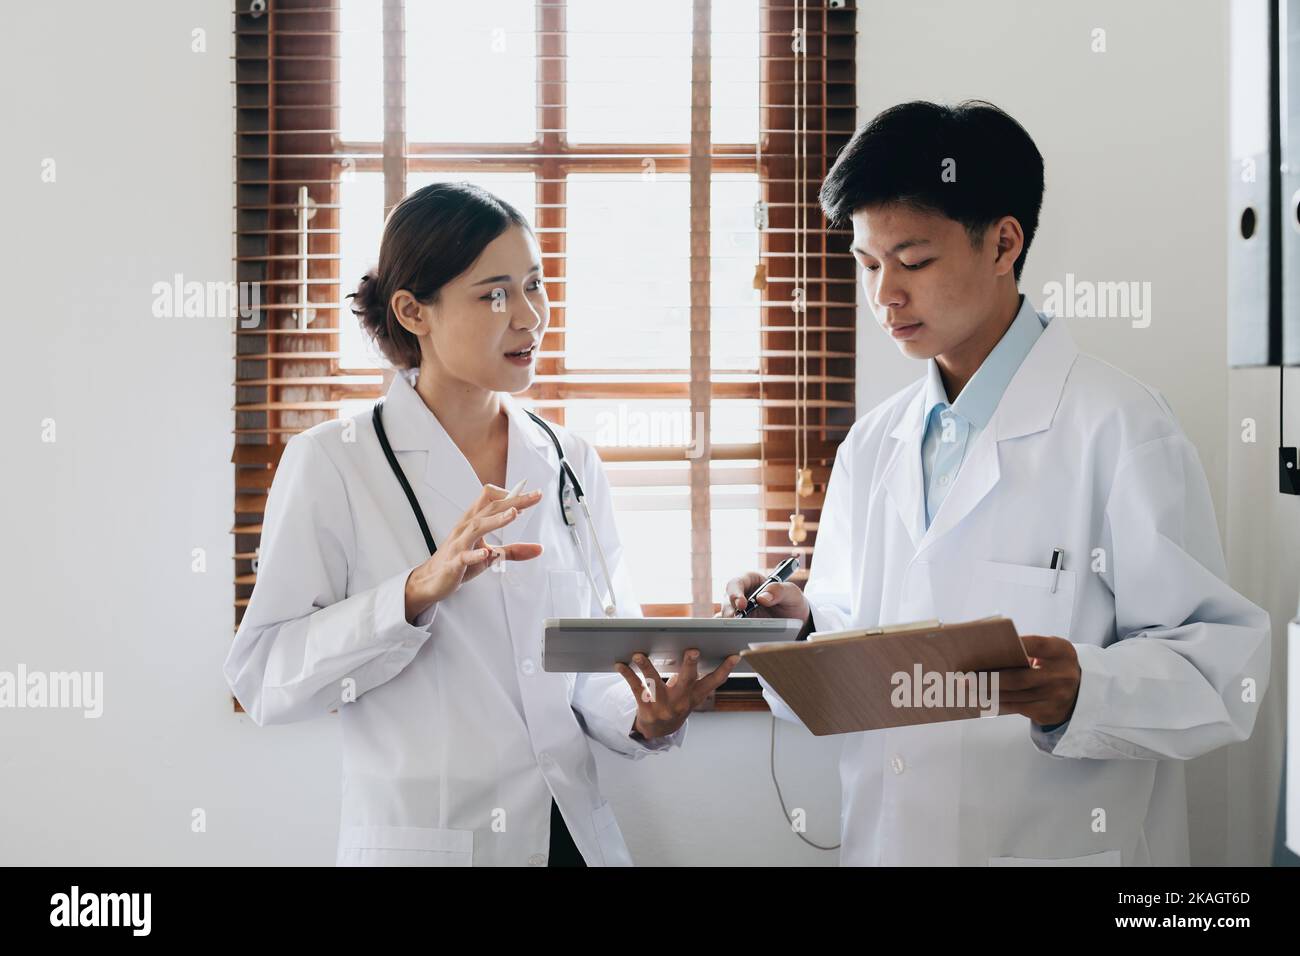 Portrait d'un médecin asiatique féminin et d'un médecin masculin utilisant un comprimé pour discuter des problèmes des patients avant le traitement Banque D'Images